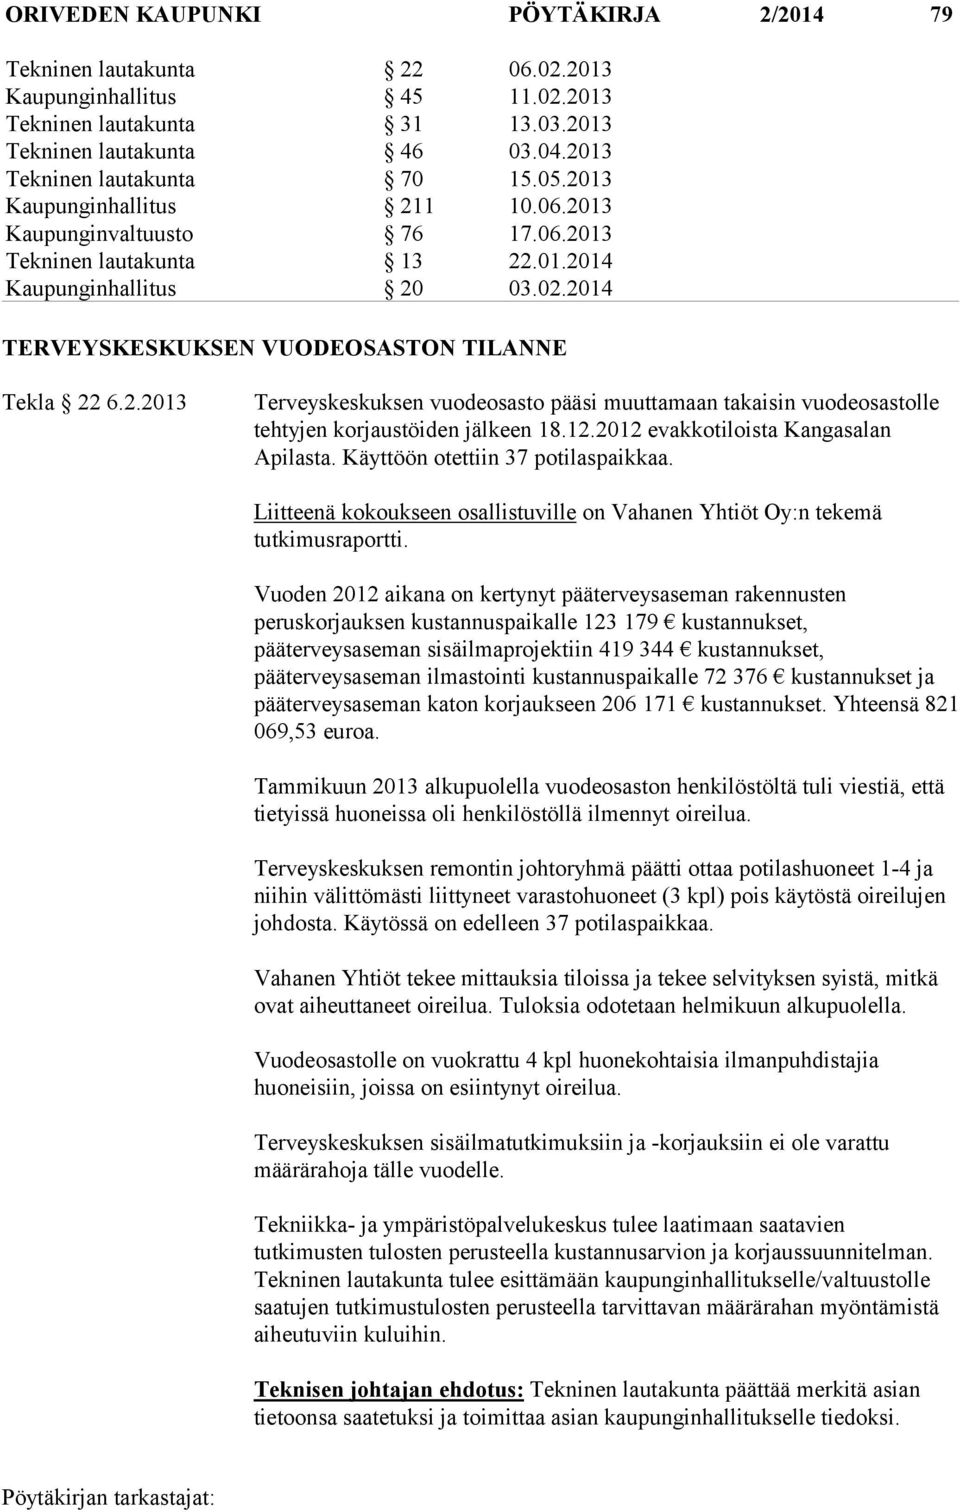 12.2012 evakkotiloista Kangasalan Apilasta. Käyttöön otettiin 37 potilaspaikkaa. Liitteenä kokoukseen osallistuville on Vahanen Yhtiöt Oy:n tekemä tutkimusraportti.